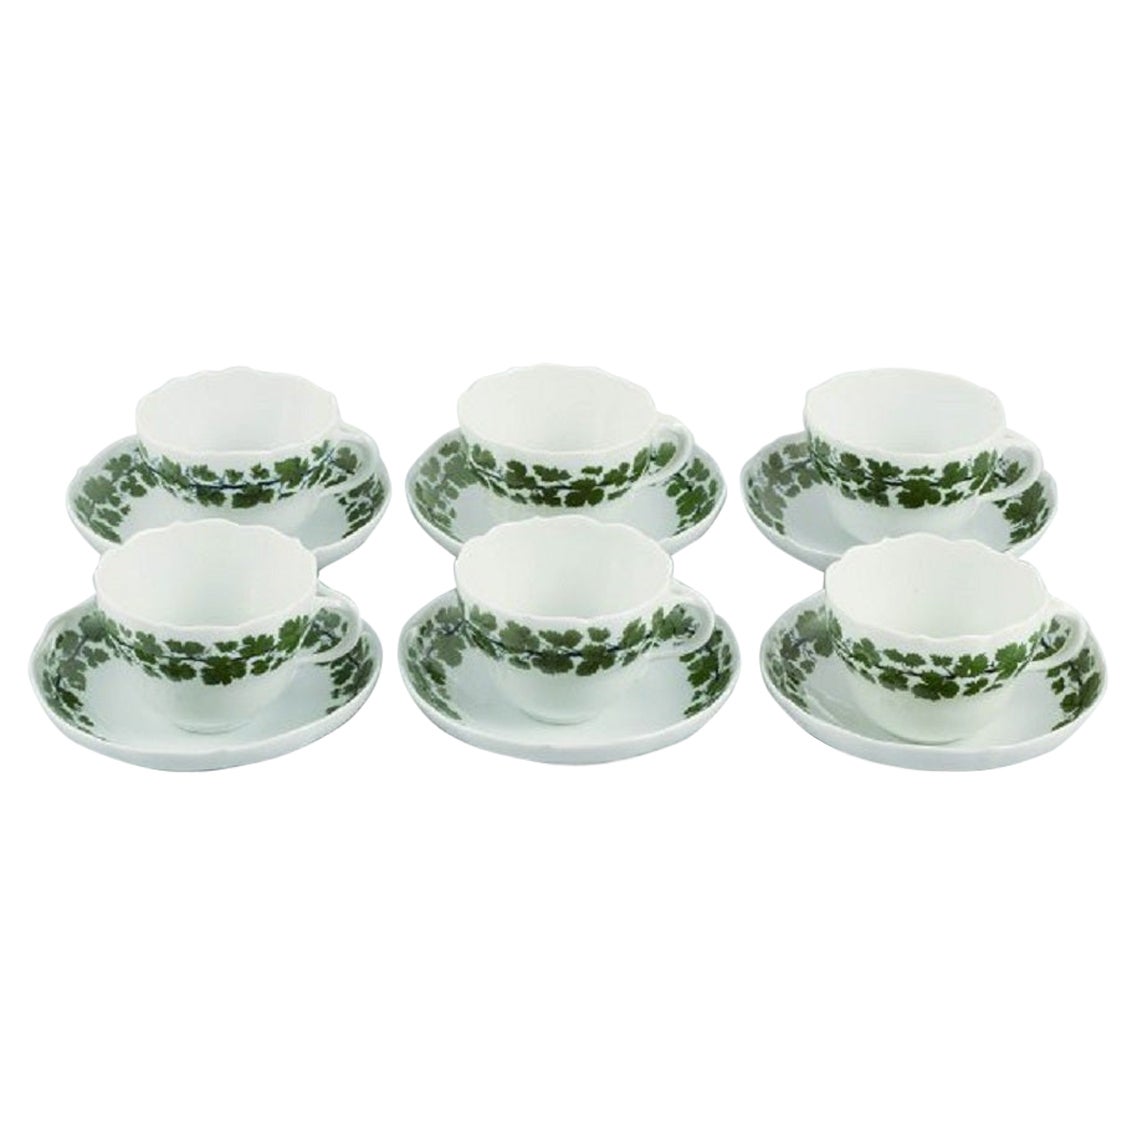 Sechs Meissener Grüne Efeu-Blatt-Couchtische mit Untertassen aus Porzellan